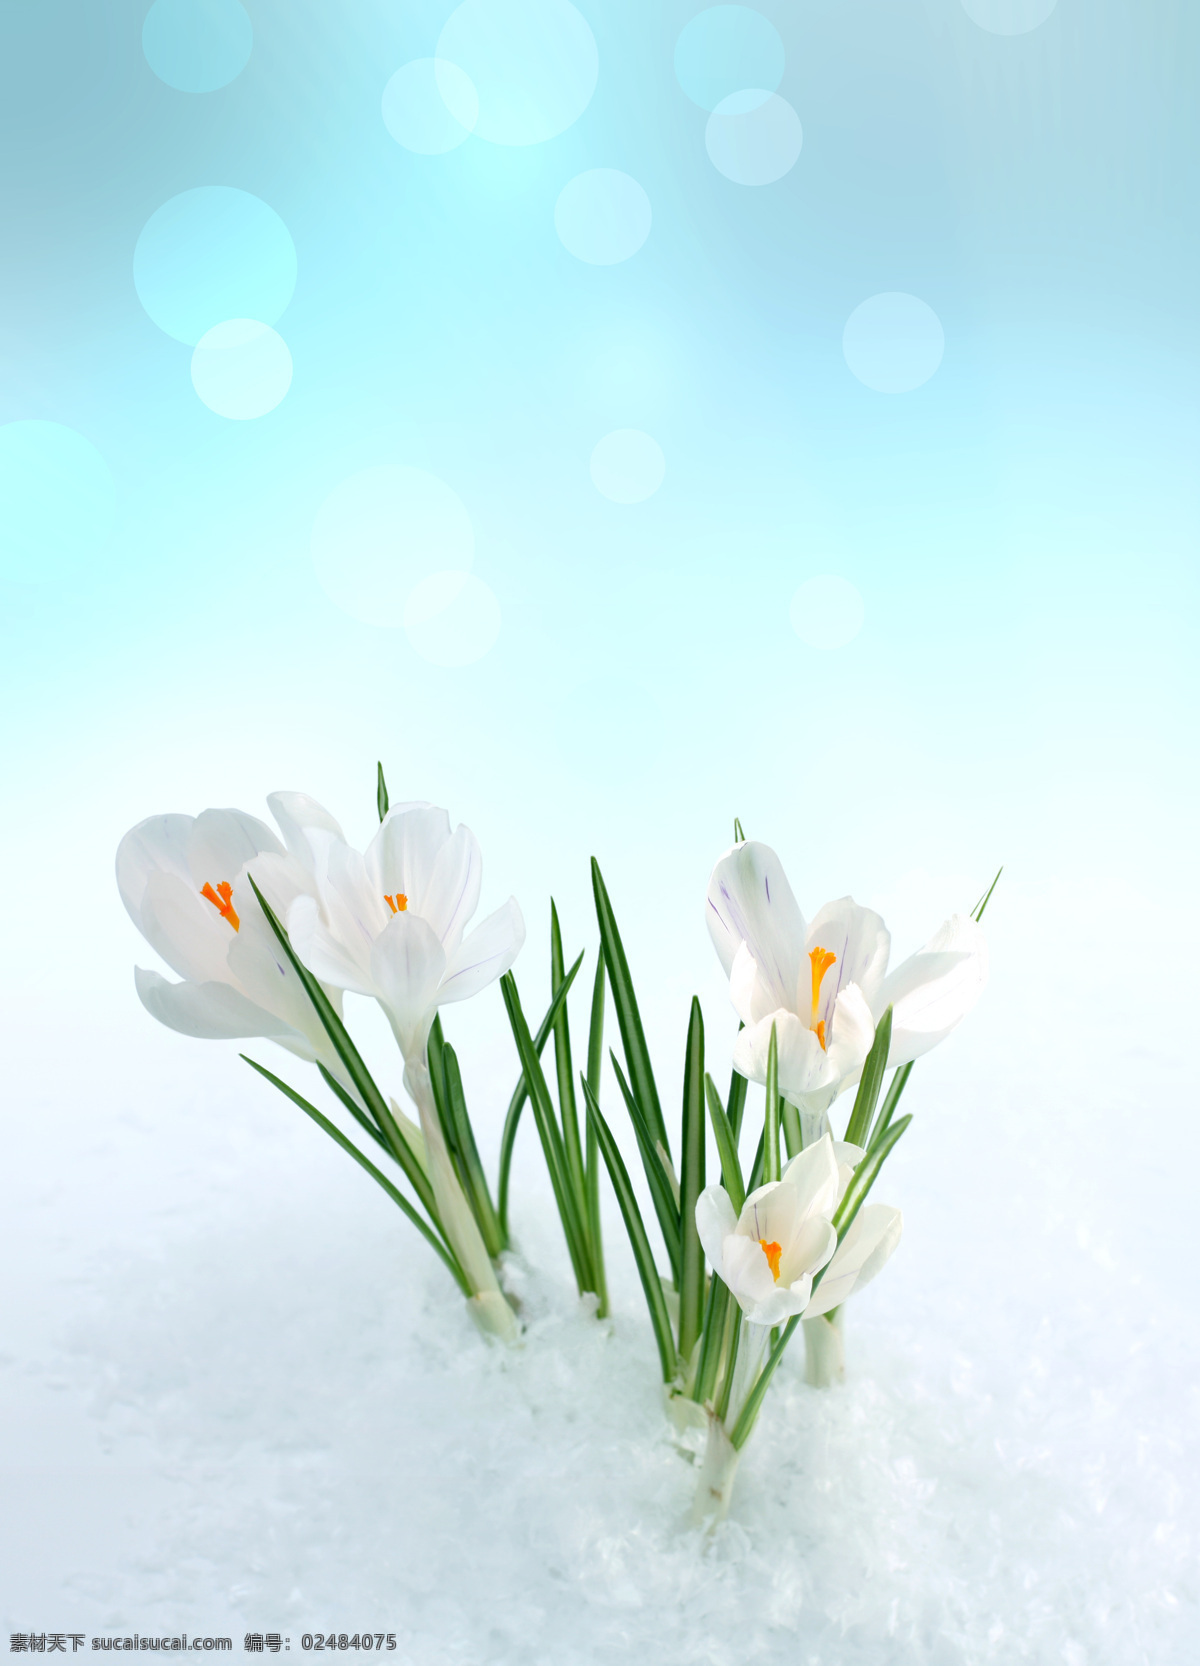 雪 里 鲜花 雪里的鲜花 鲜花背景 花朵 花卉 美丽鲜花 白雪 花草树木 生物世界